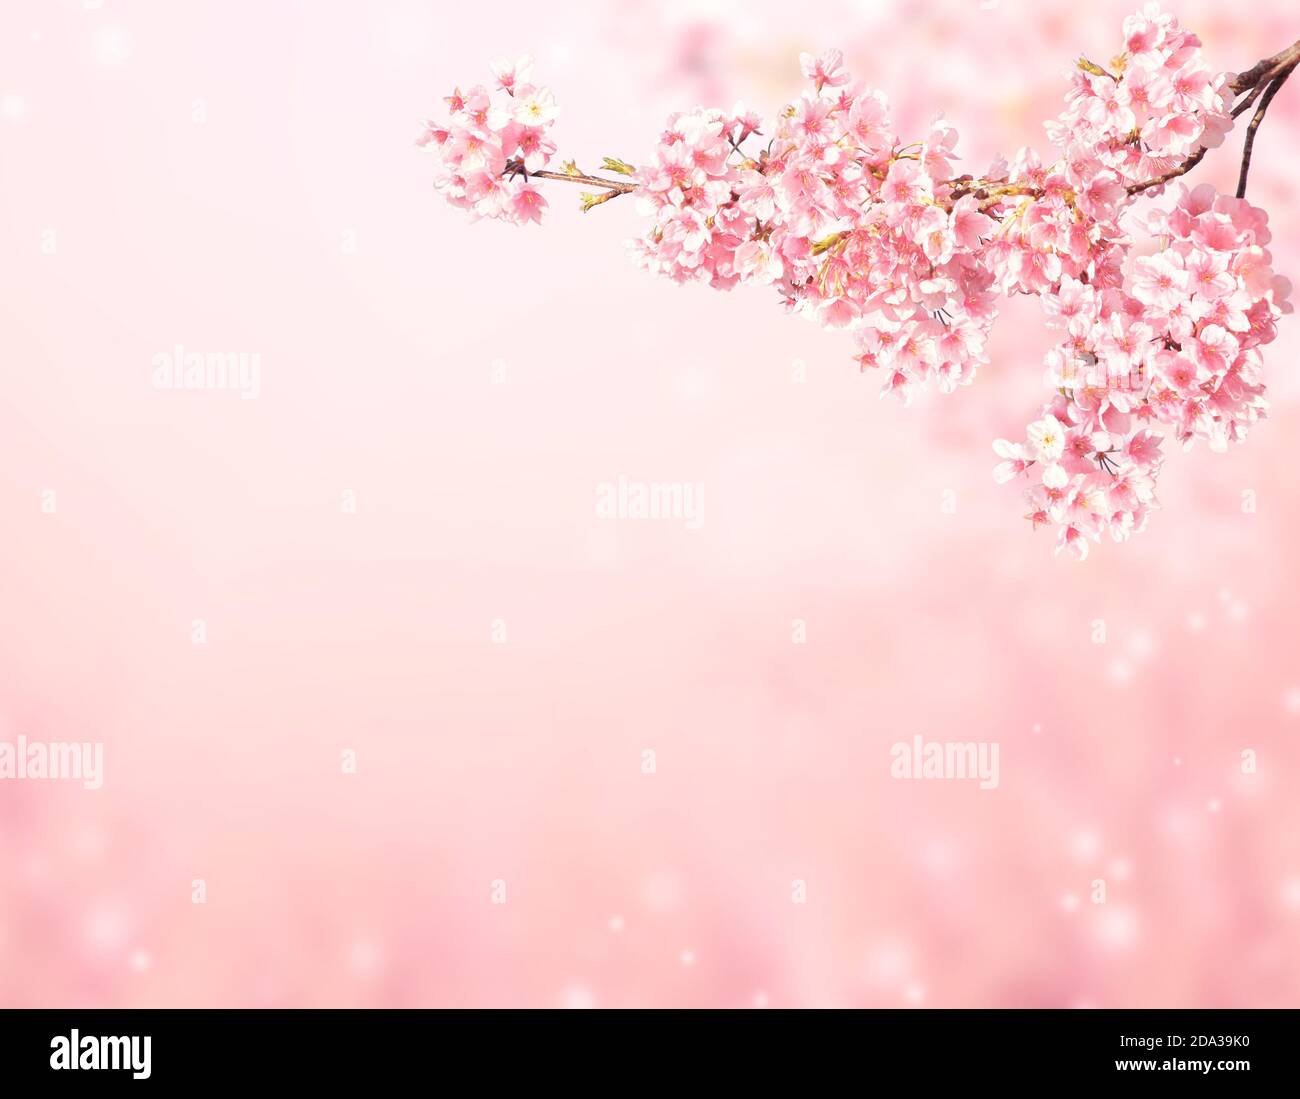 Hoa anh đào màu hồng: Hãy cùng thưởng thức một bức ảnh hoa anh đào màu hồng tuyệt đẹp, màu sắc tươi sáng và chất lượng cao. Cùng nắm tay người thân hoặc bạn bè và tận hưởng thời gian đầy thú vị với một khung cảnh ấm áp, tươi đẹp và lãng mạn.